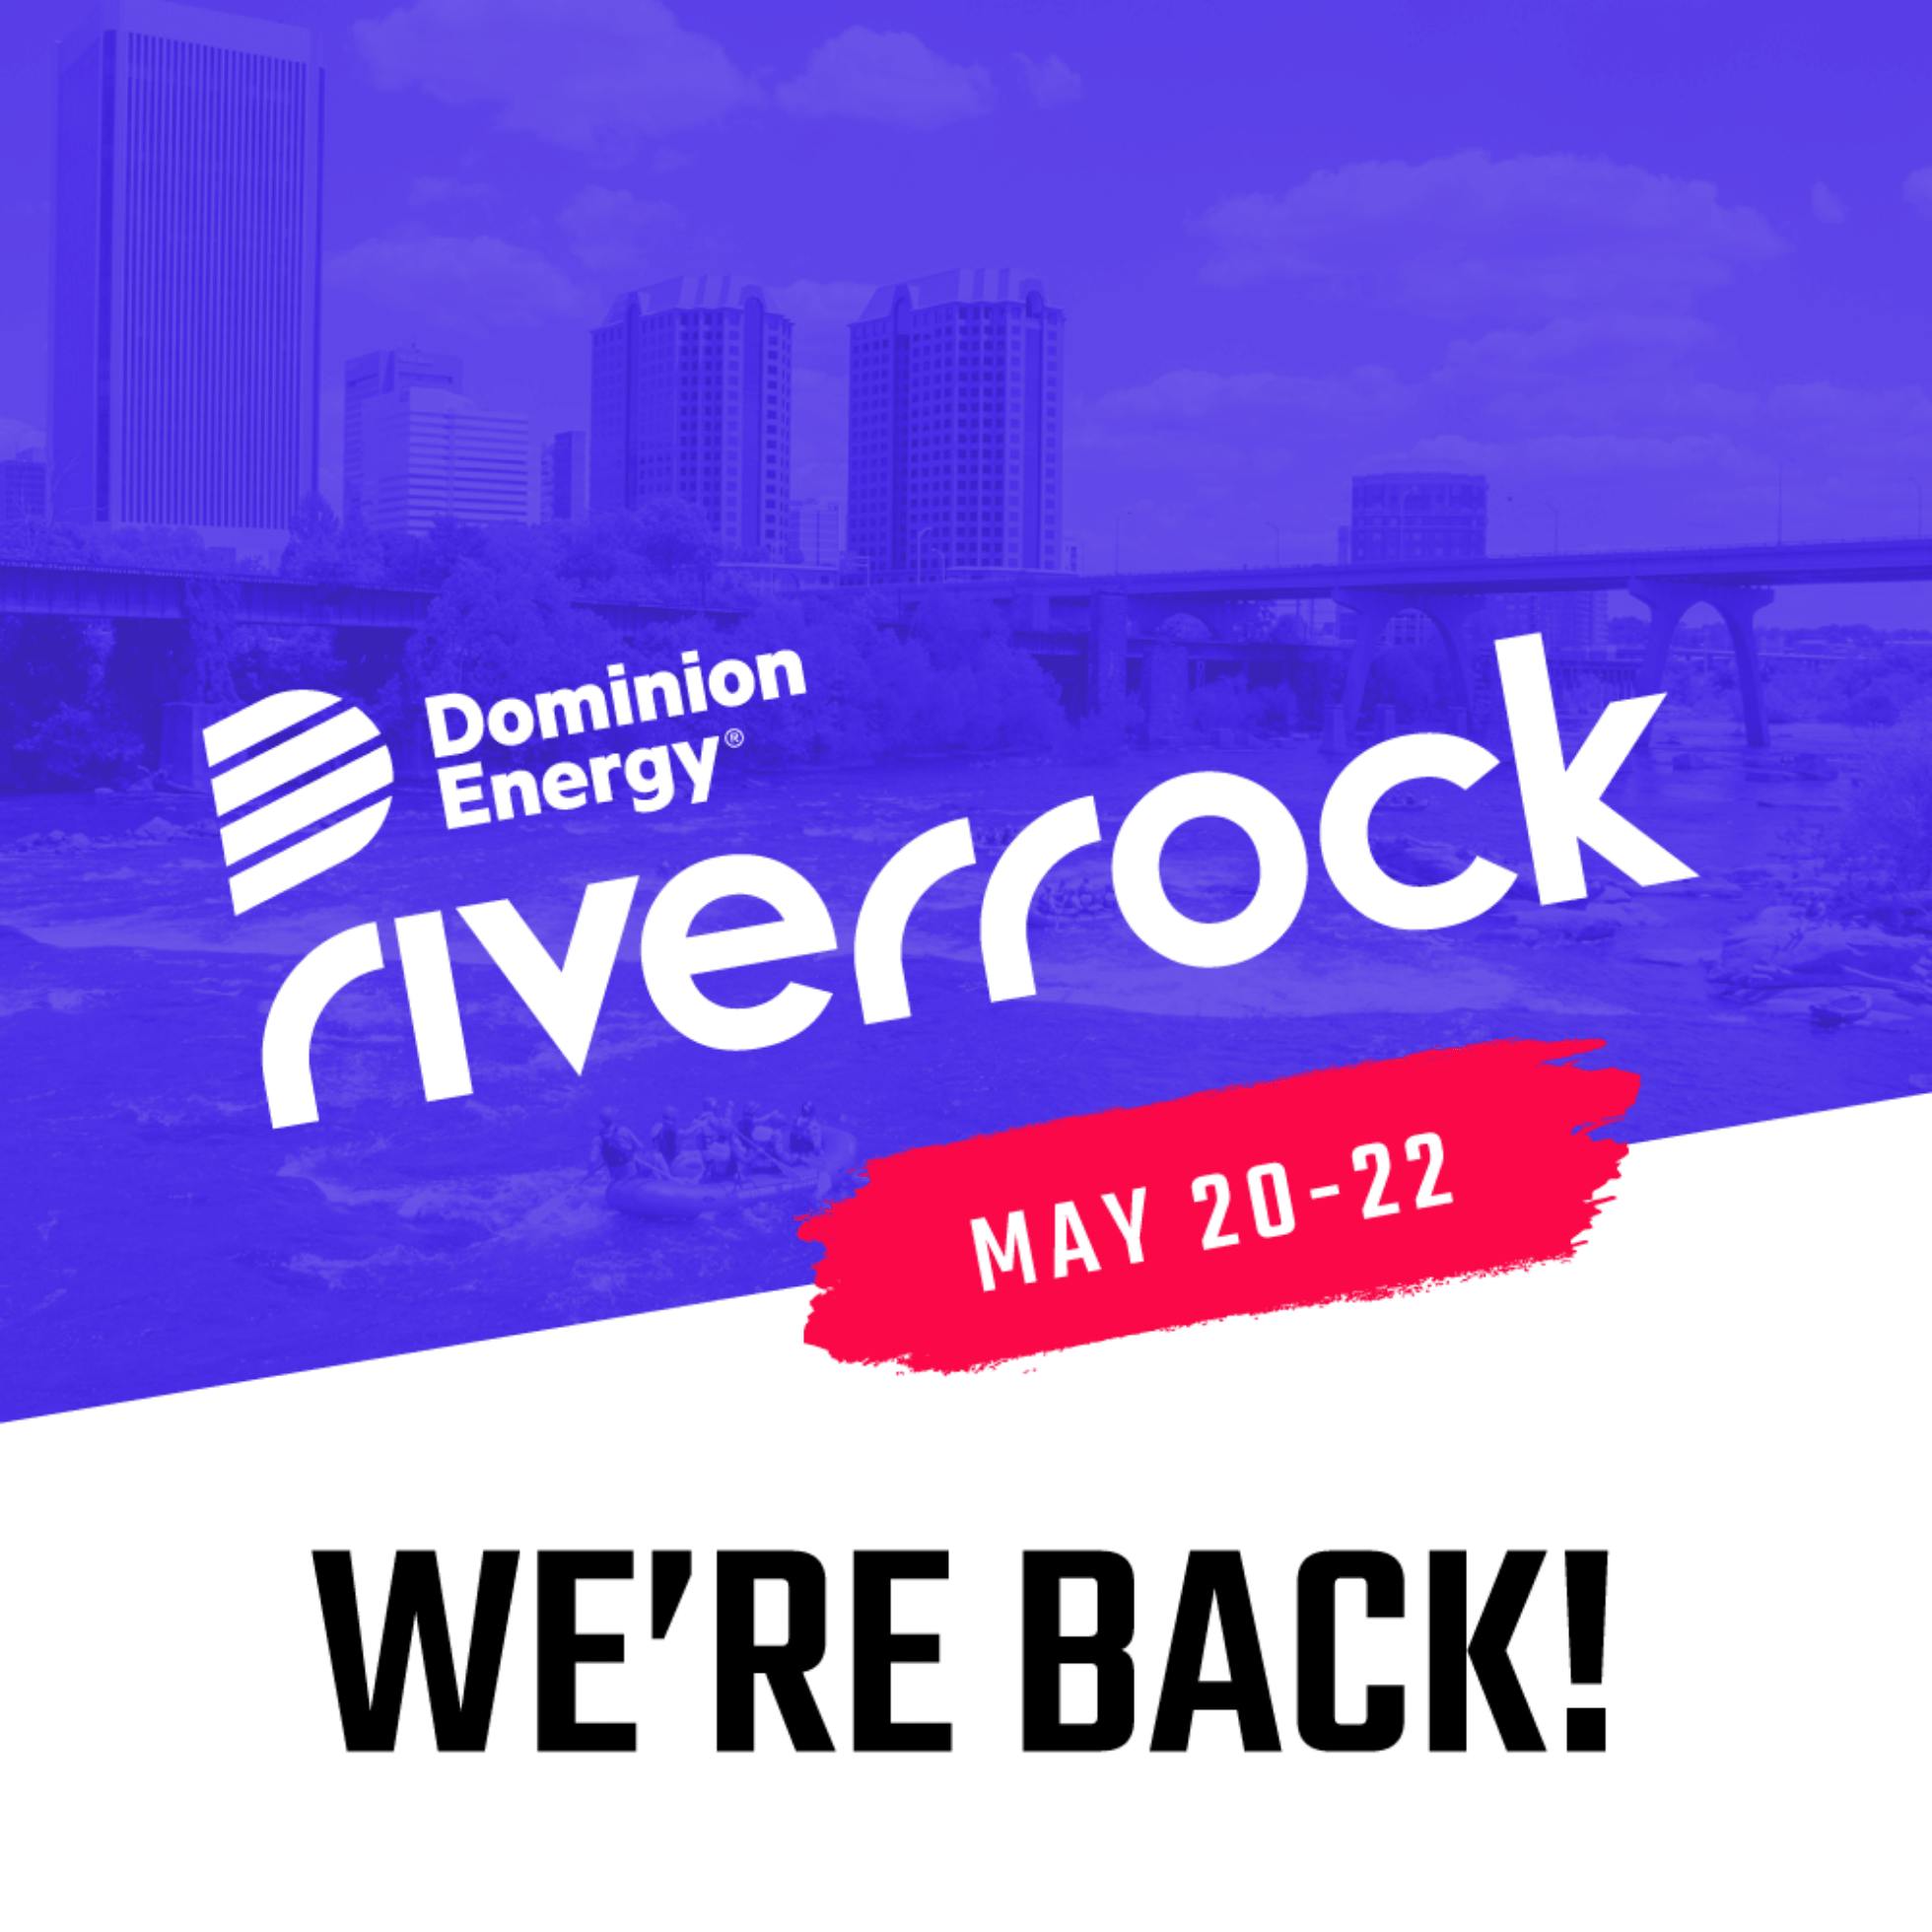 Dominion Energy Riverrock 2022